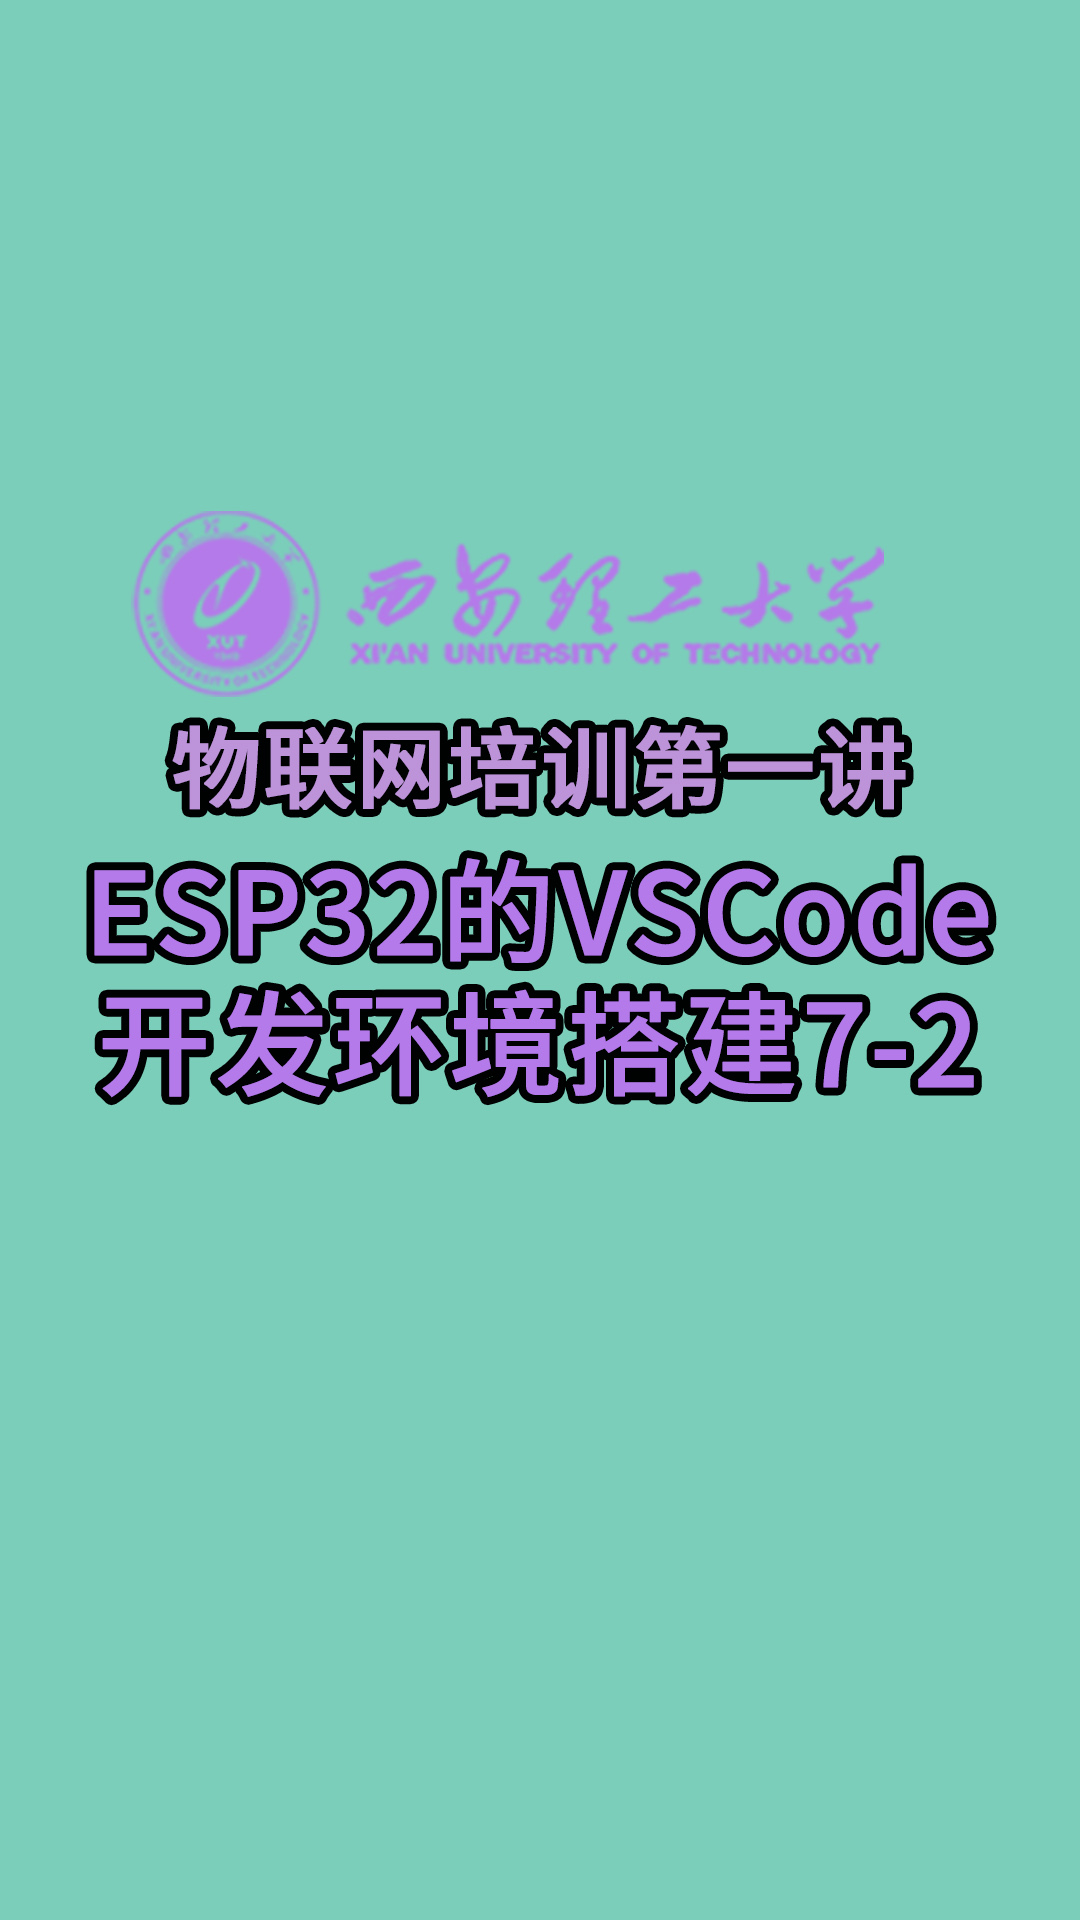 西安理工大學-物聯網培訓第一講-ESP32的VSCode開發環境搭建7-2#物聯網 